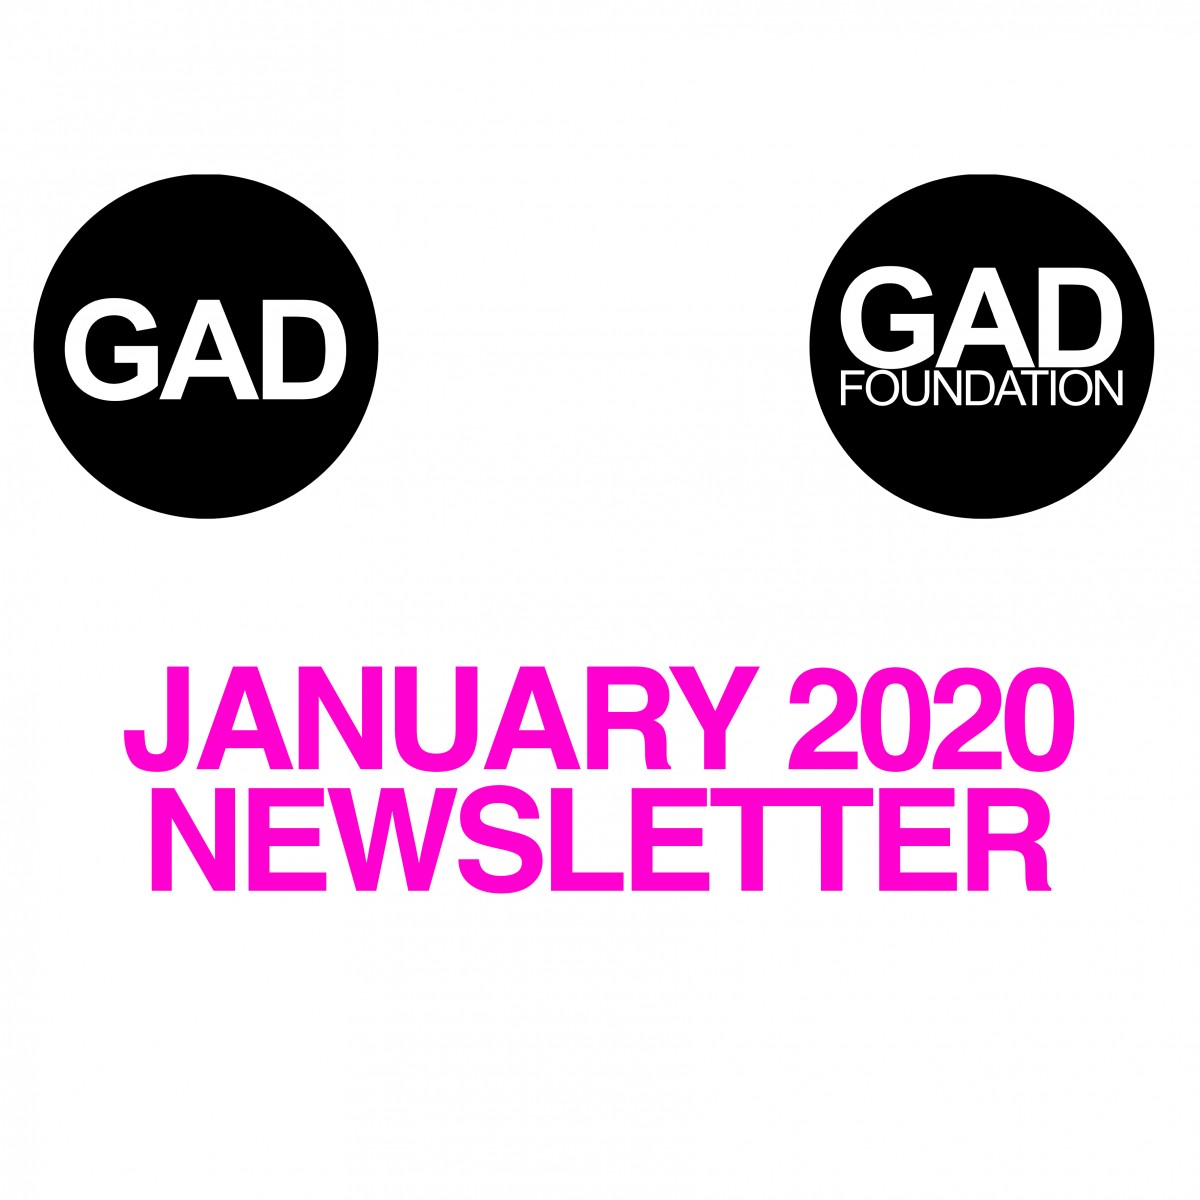 January 2020 Newsletter